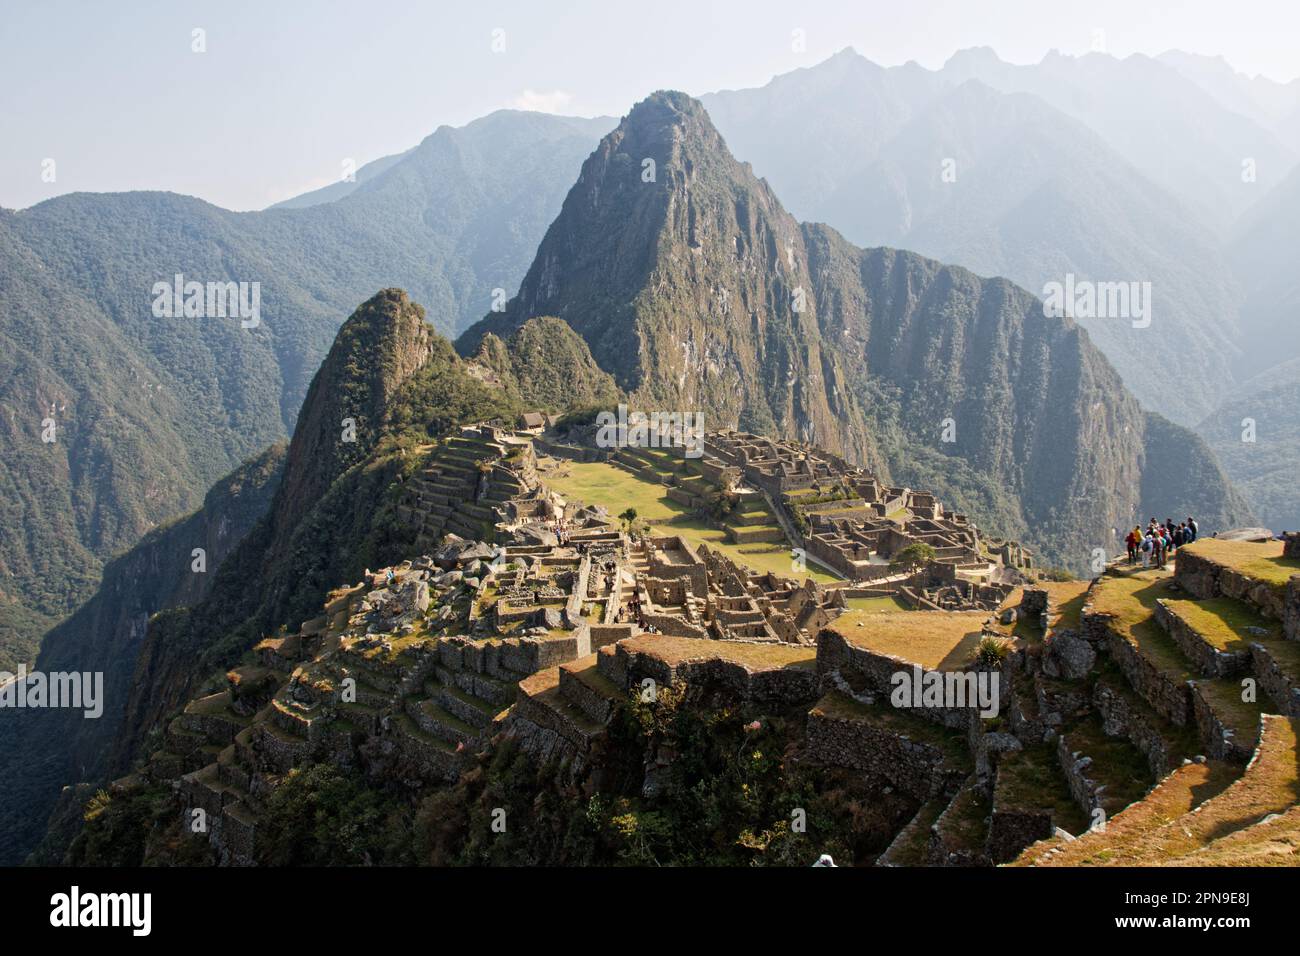 The iconic view of Machu Picchu, Cusco Department, Peru Stock Photo